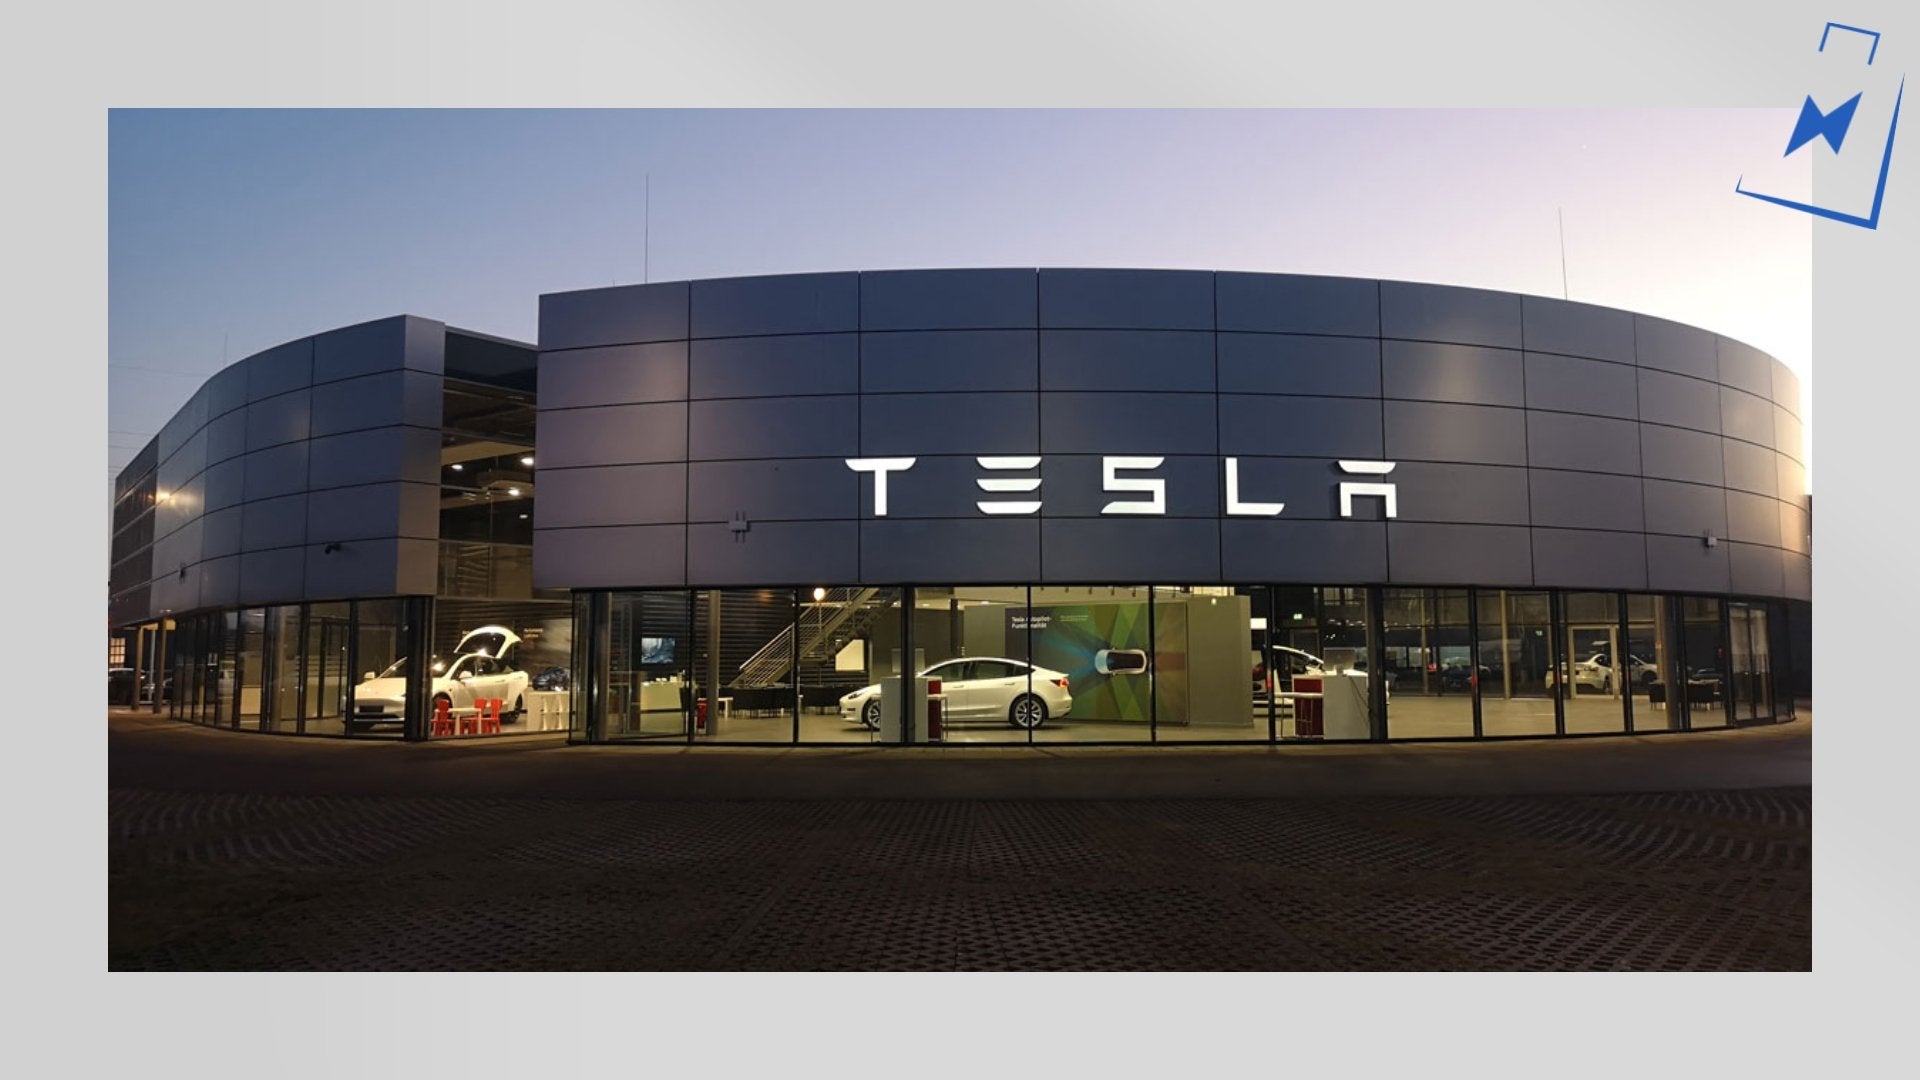 Tesla baut Verkaufs- und Servicestandorte weiter aus! Drei neue Standorte in Bayern eröffnet. - Shop4Tesla